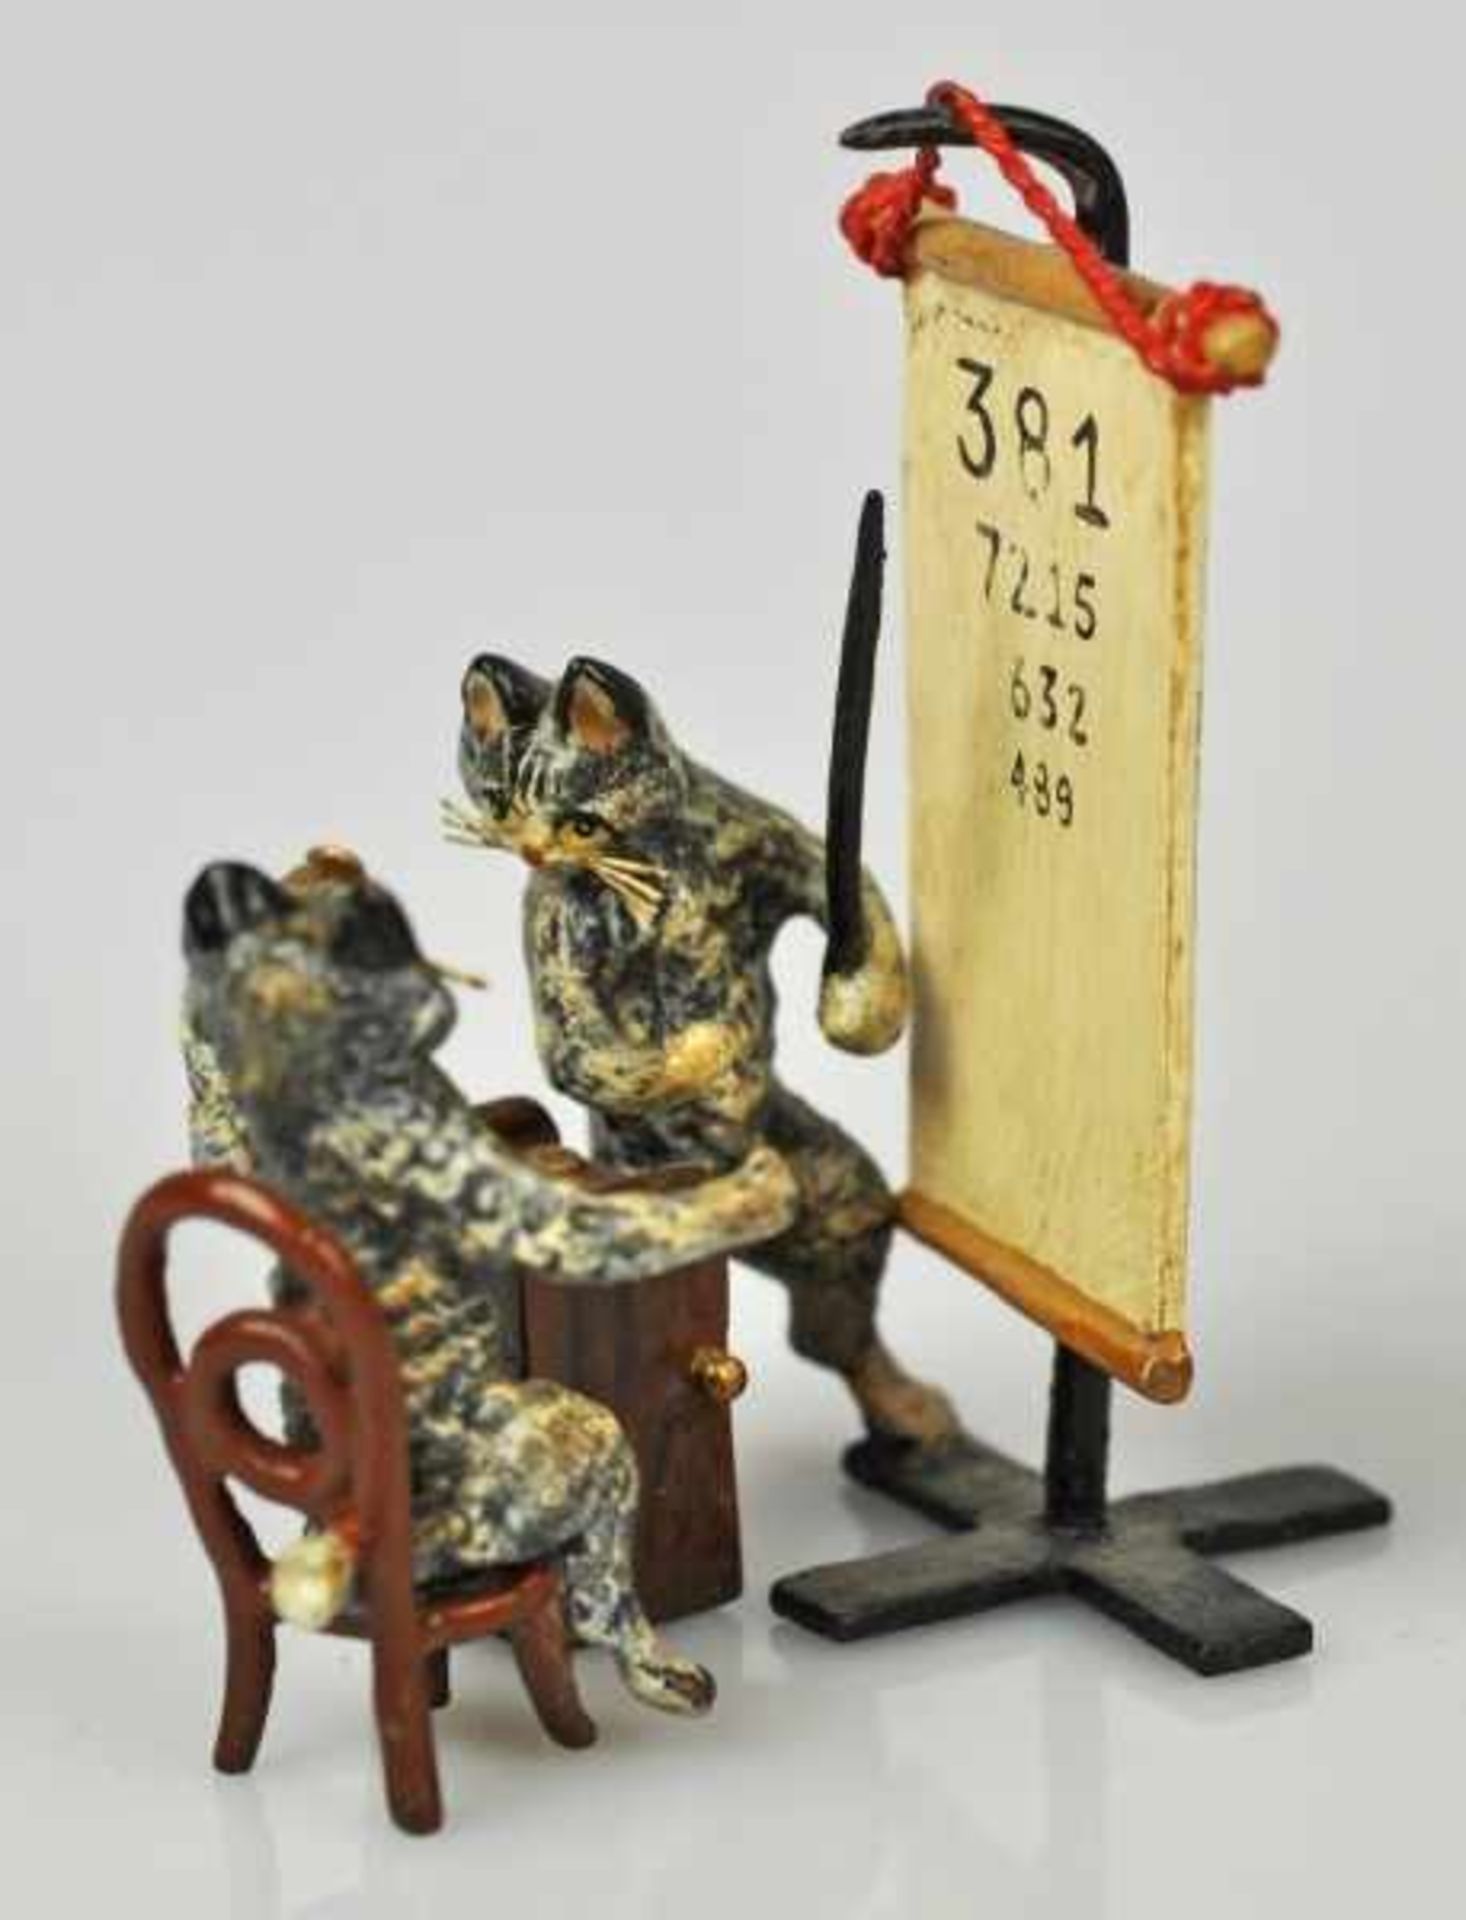 KATZENSEHTEST zwei Katzen beim Sehtest, polychrom bemalt, Wiener Bronze, Marke FBW, 6x4x4cm - Bild 3 aus 4